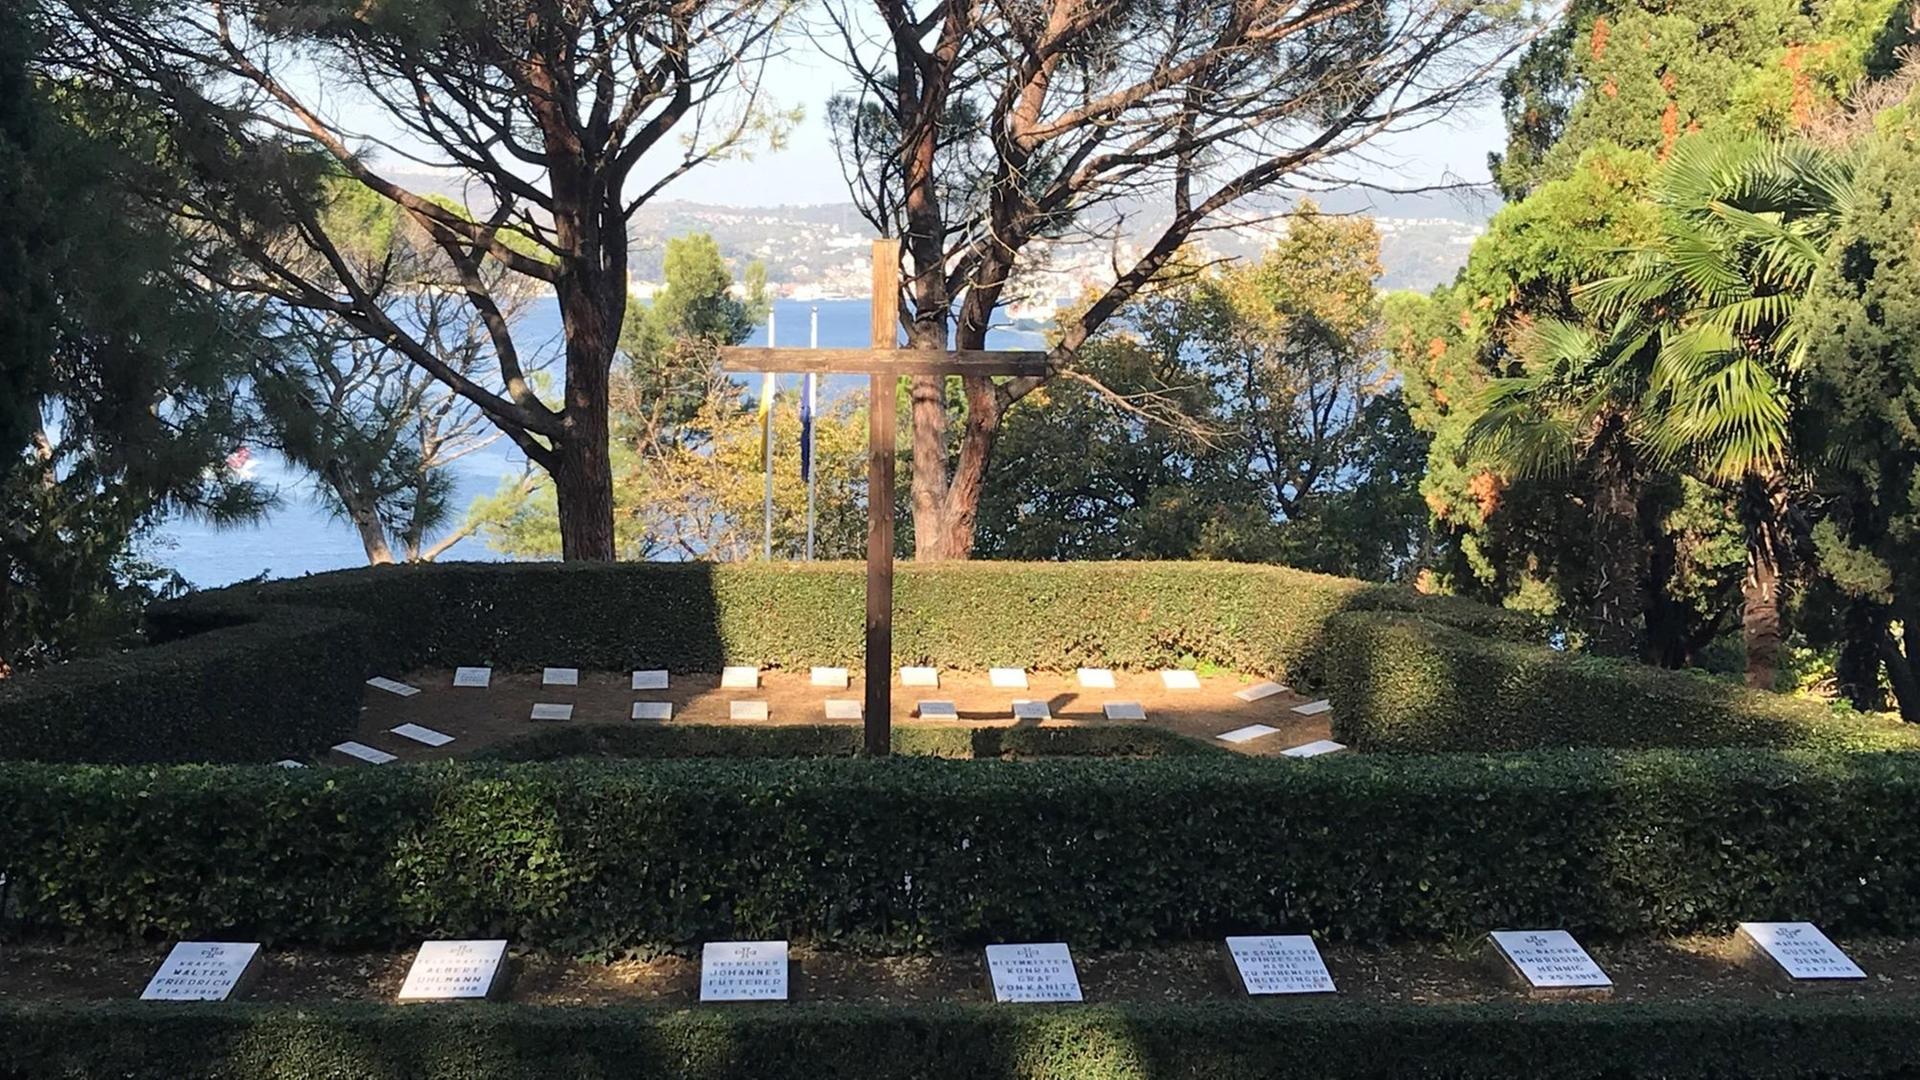 Grabplatten für gefallene Soldaten der beiden Weltkriege, umgeben von Bäumen. Die deutsche Kriegsgräberstätte in der Türkei liegt am Bosporus, im Norden Istanbuls bei Tarabya.